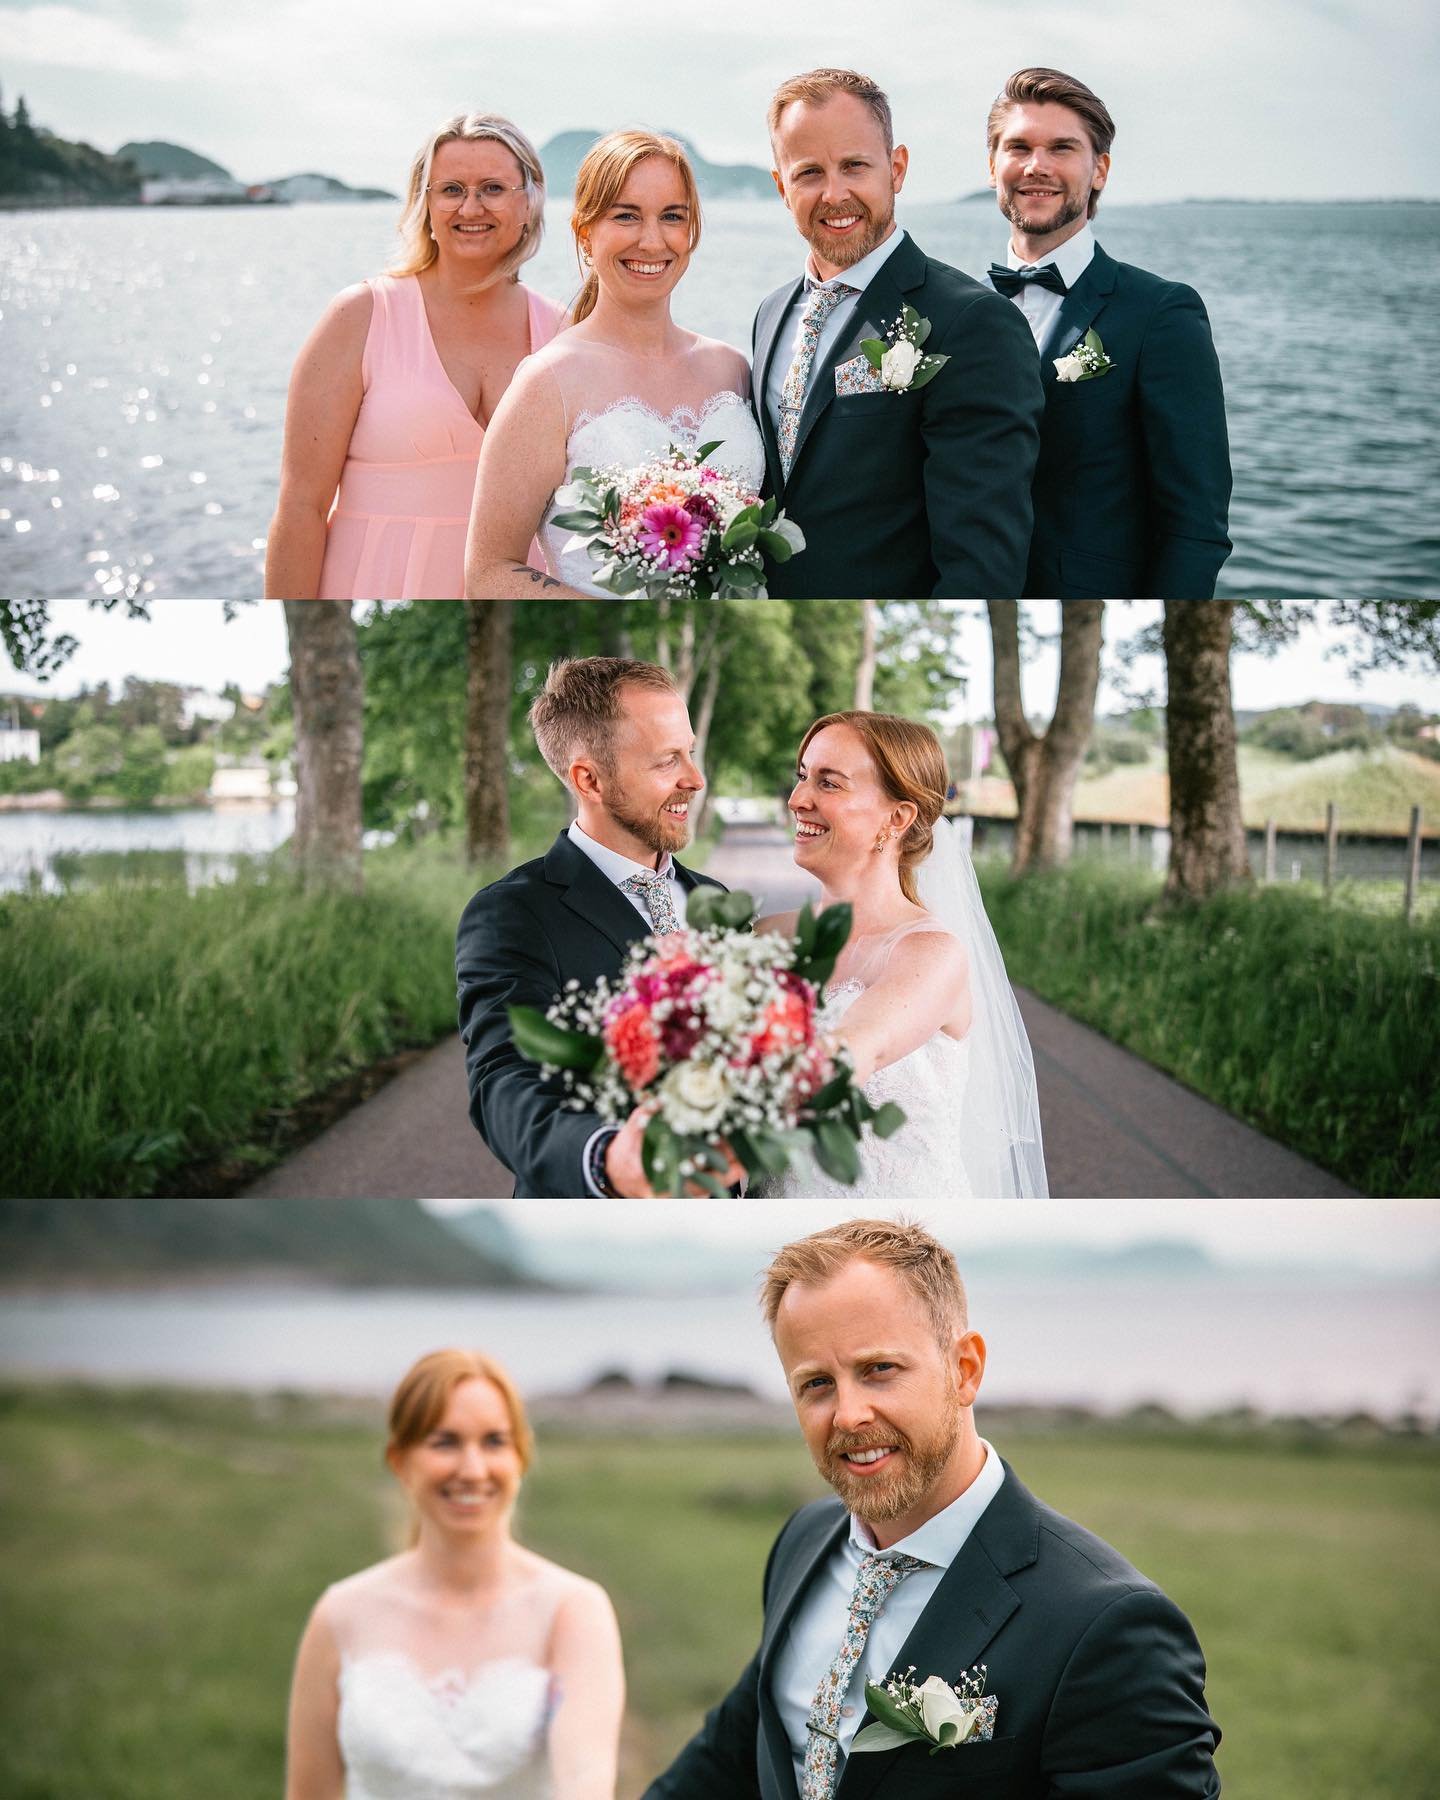 Anette og Marinus 💍
En smakebit p&aring; hva Anette og Marinus fikk servert med en halvdags-foto!
#weddingphotography #wedding #bryllup #bryllupsfoto